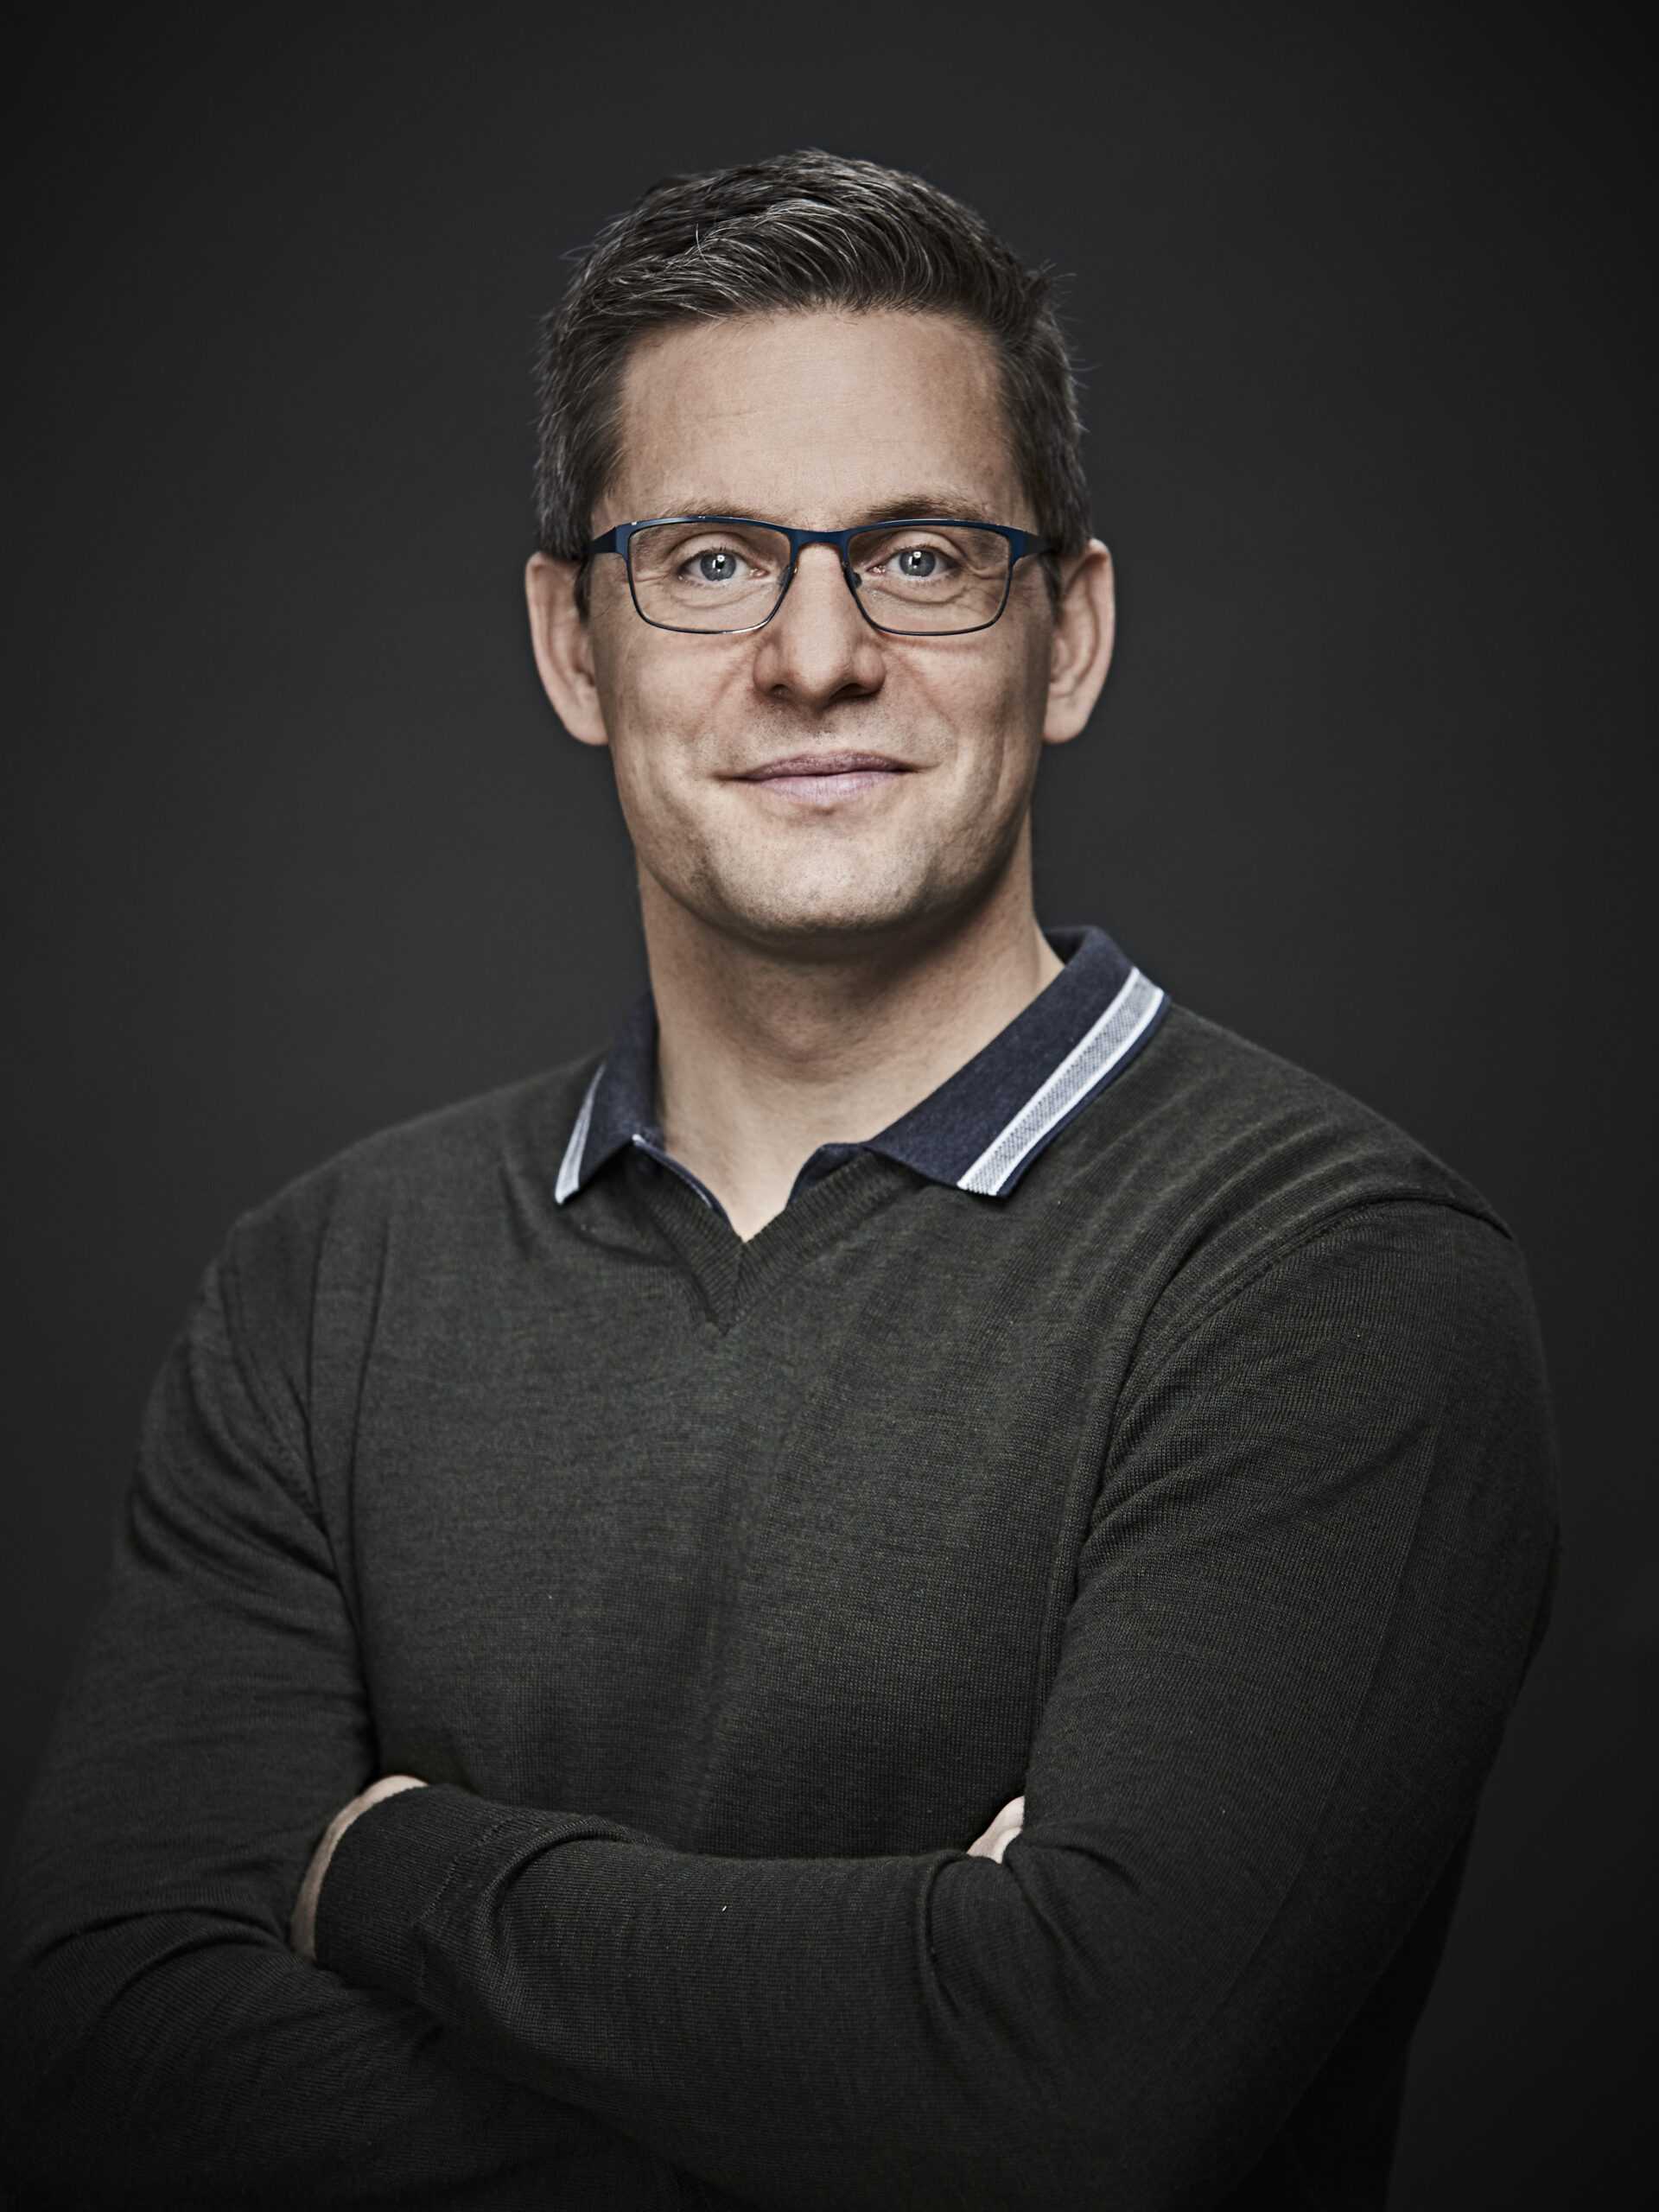 Peter Michael Sørensen